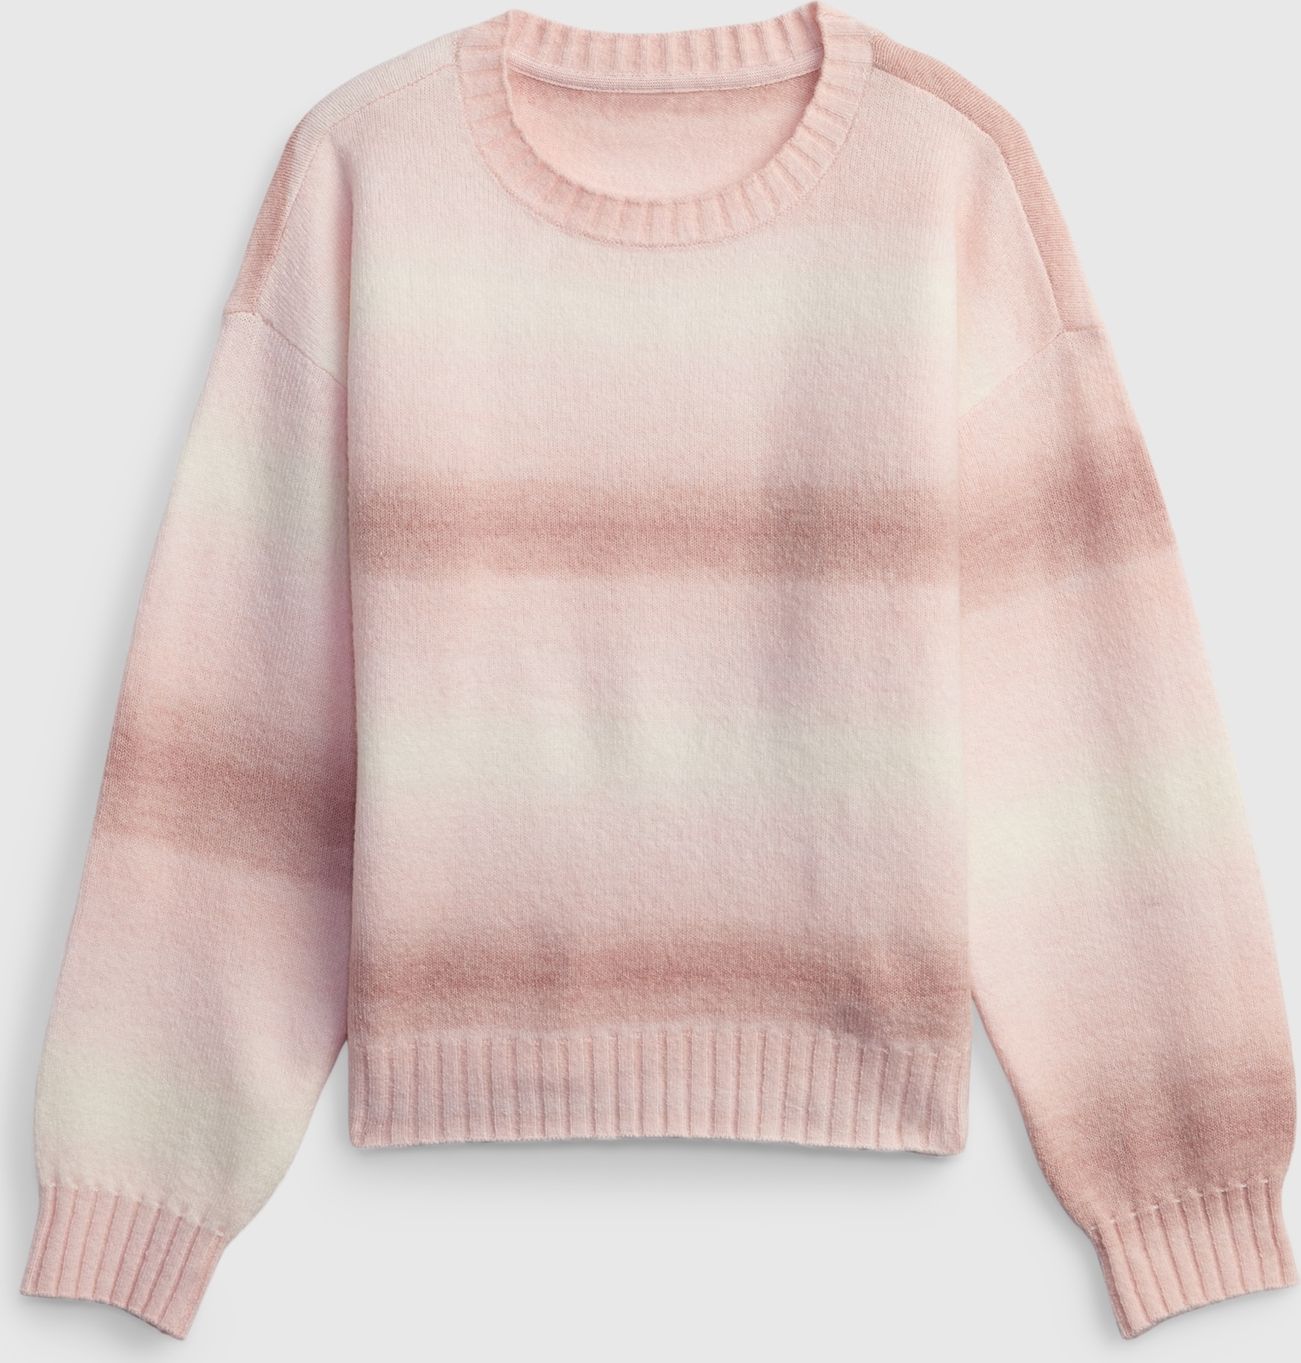 Dívky - Dětský pletený svetr Růžová - 98-110 - obrázek 1